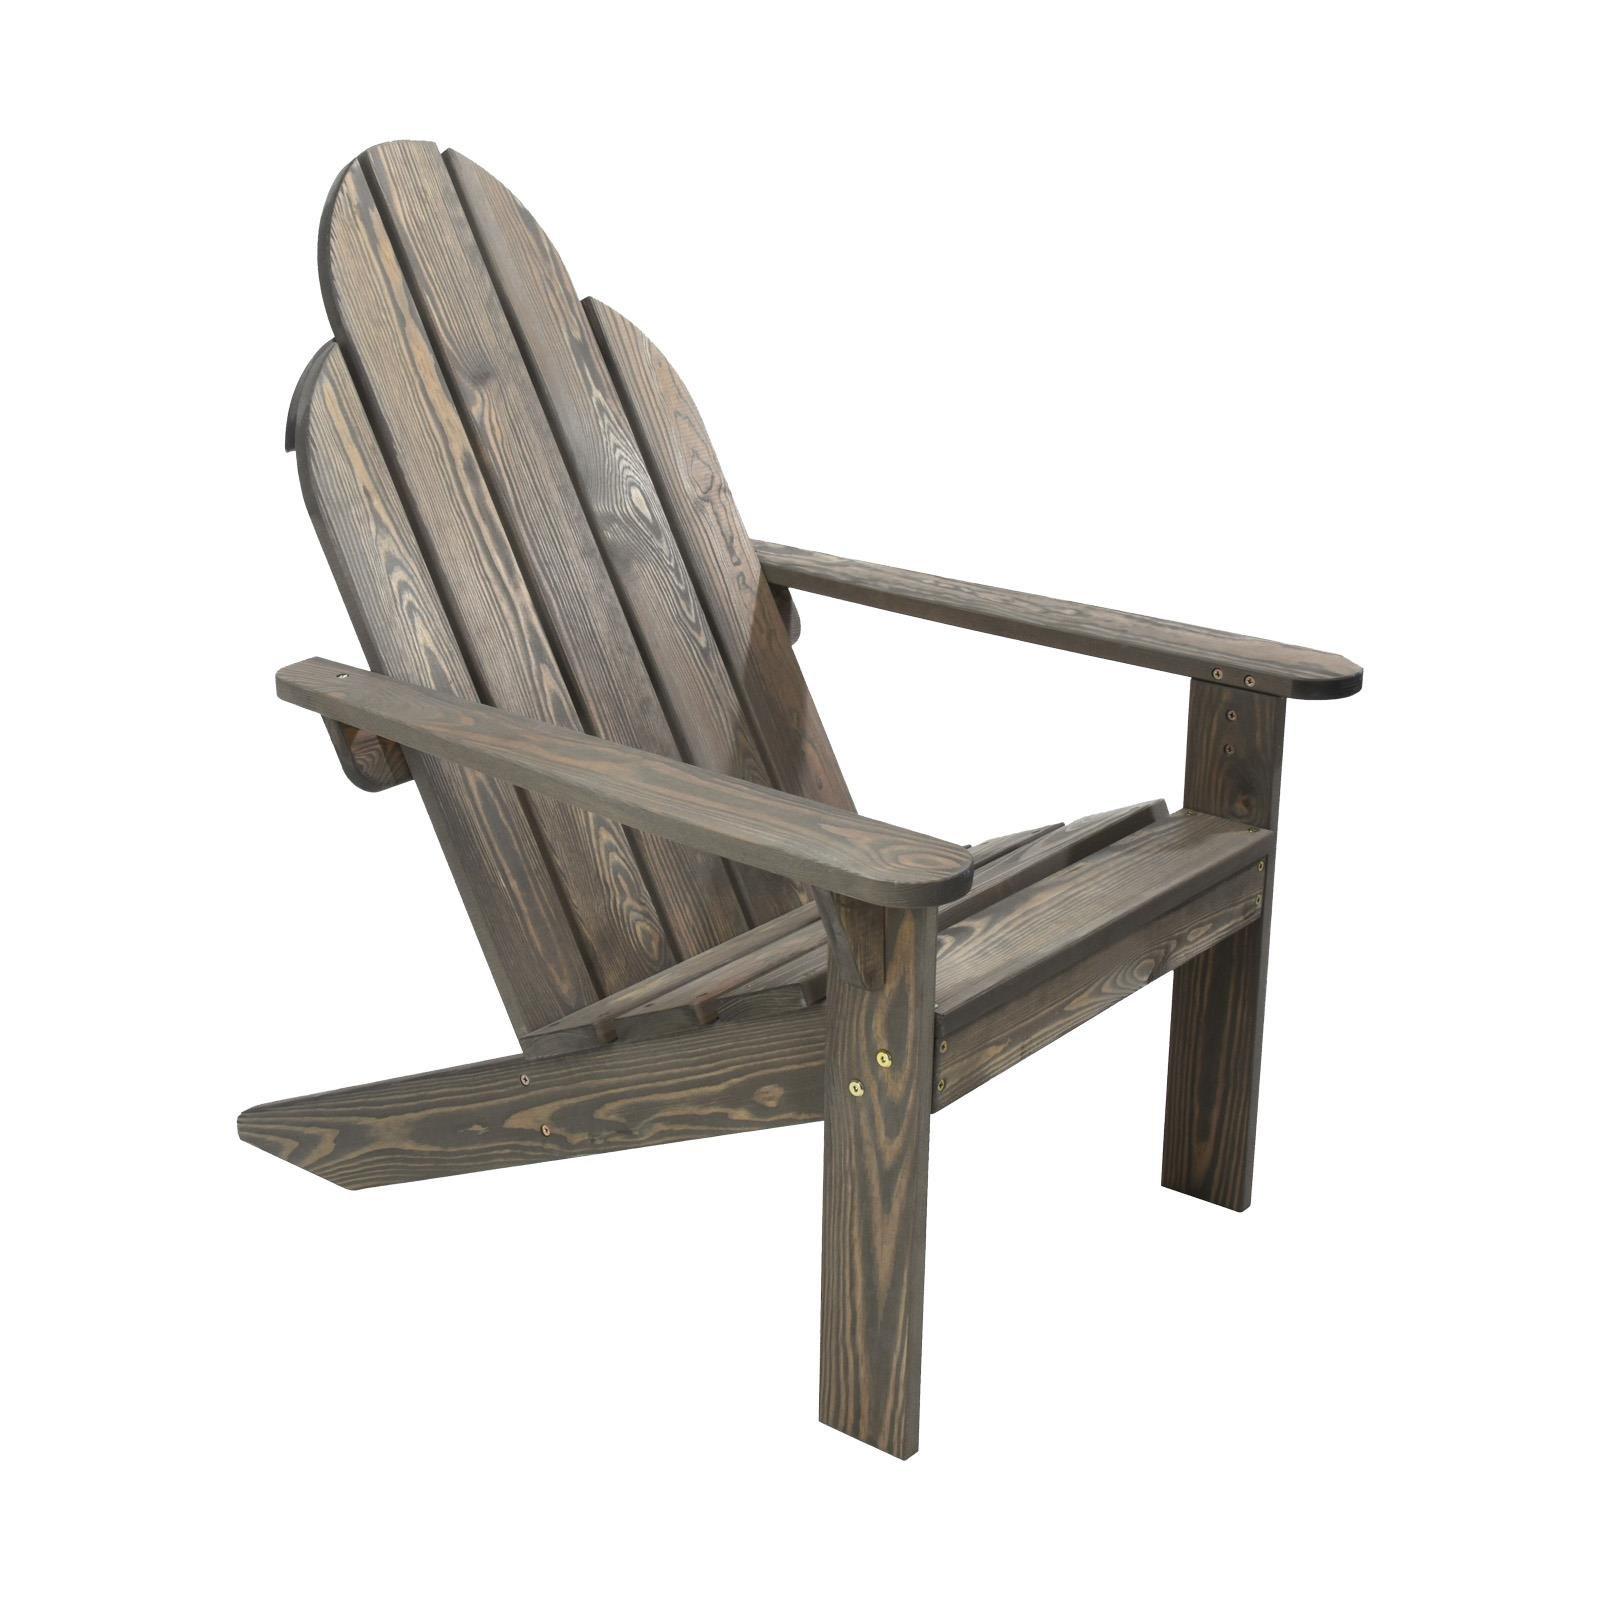 Adirondack Sun Lounger Wooden Garden Chair